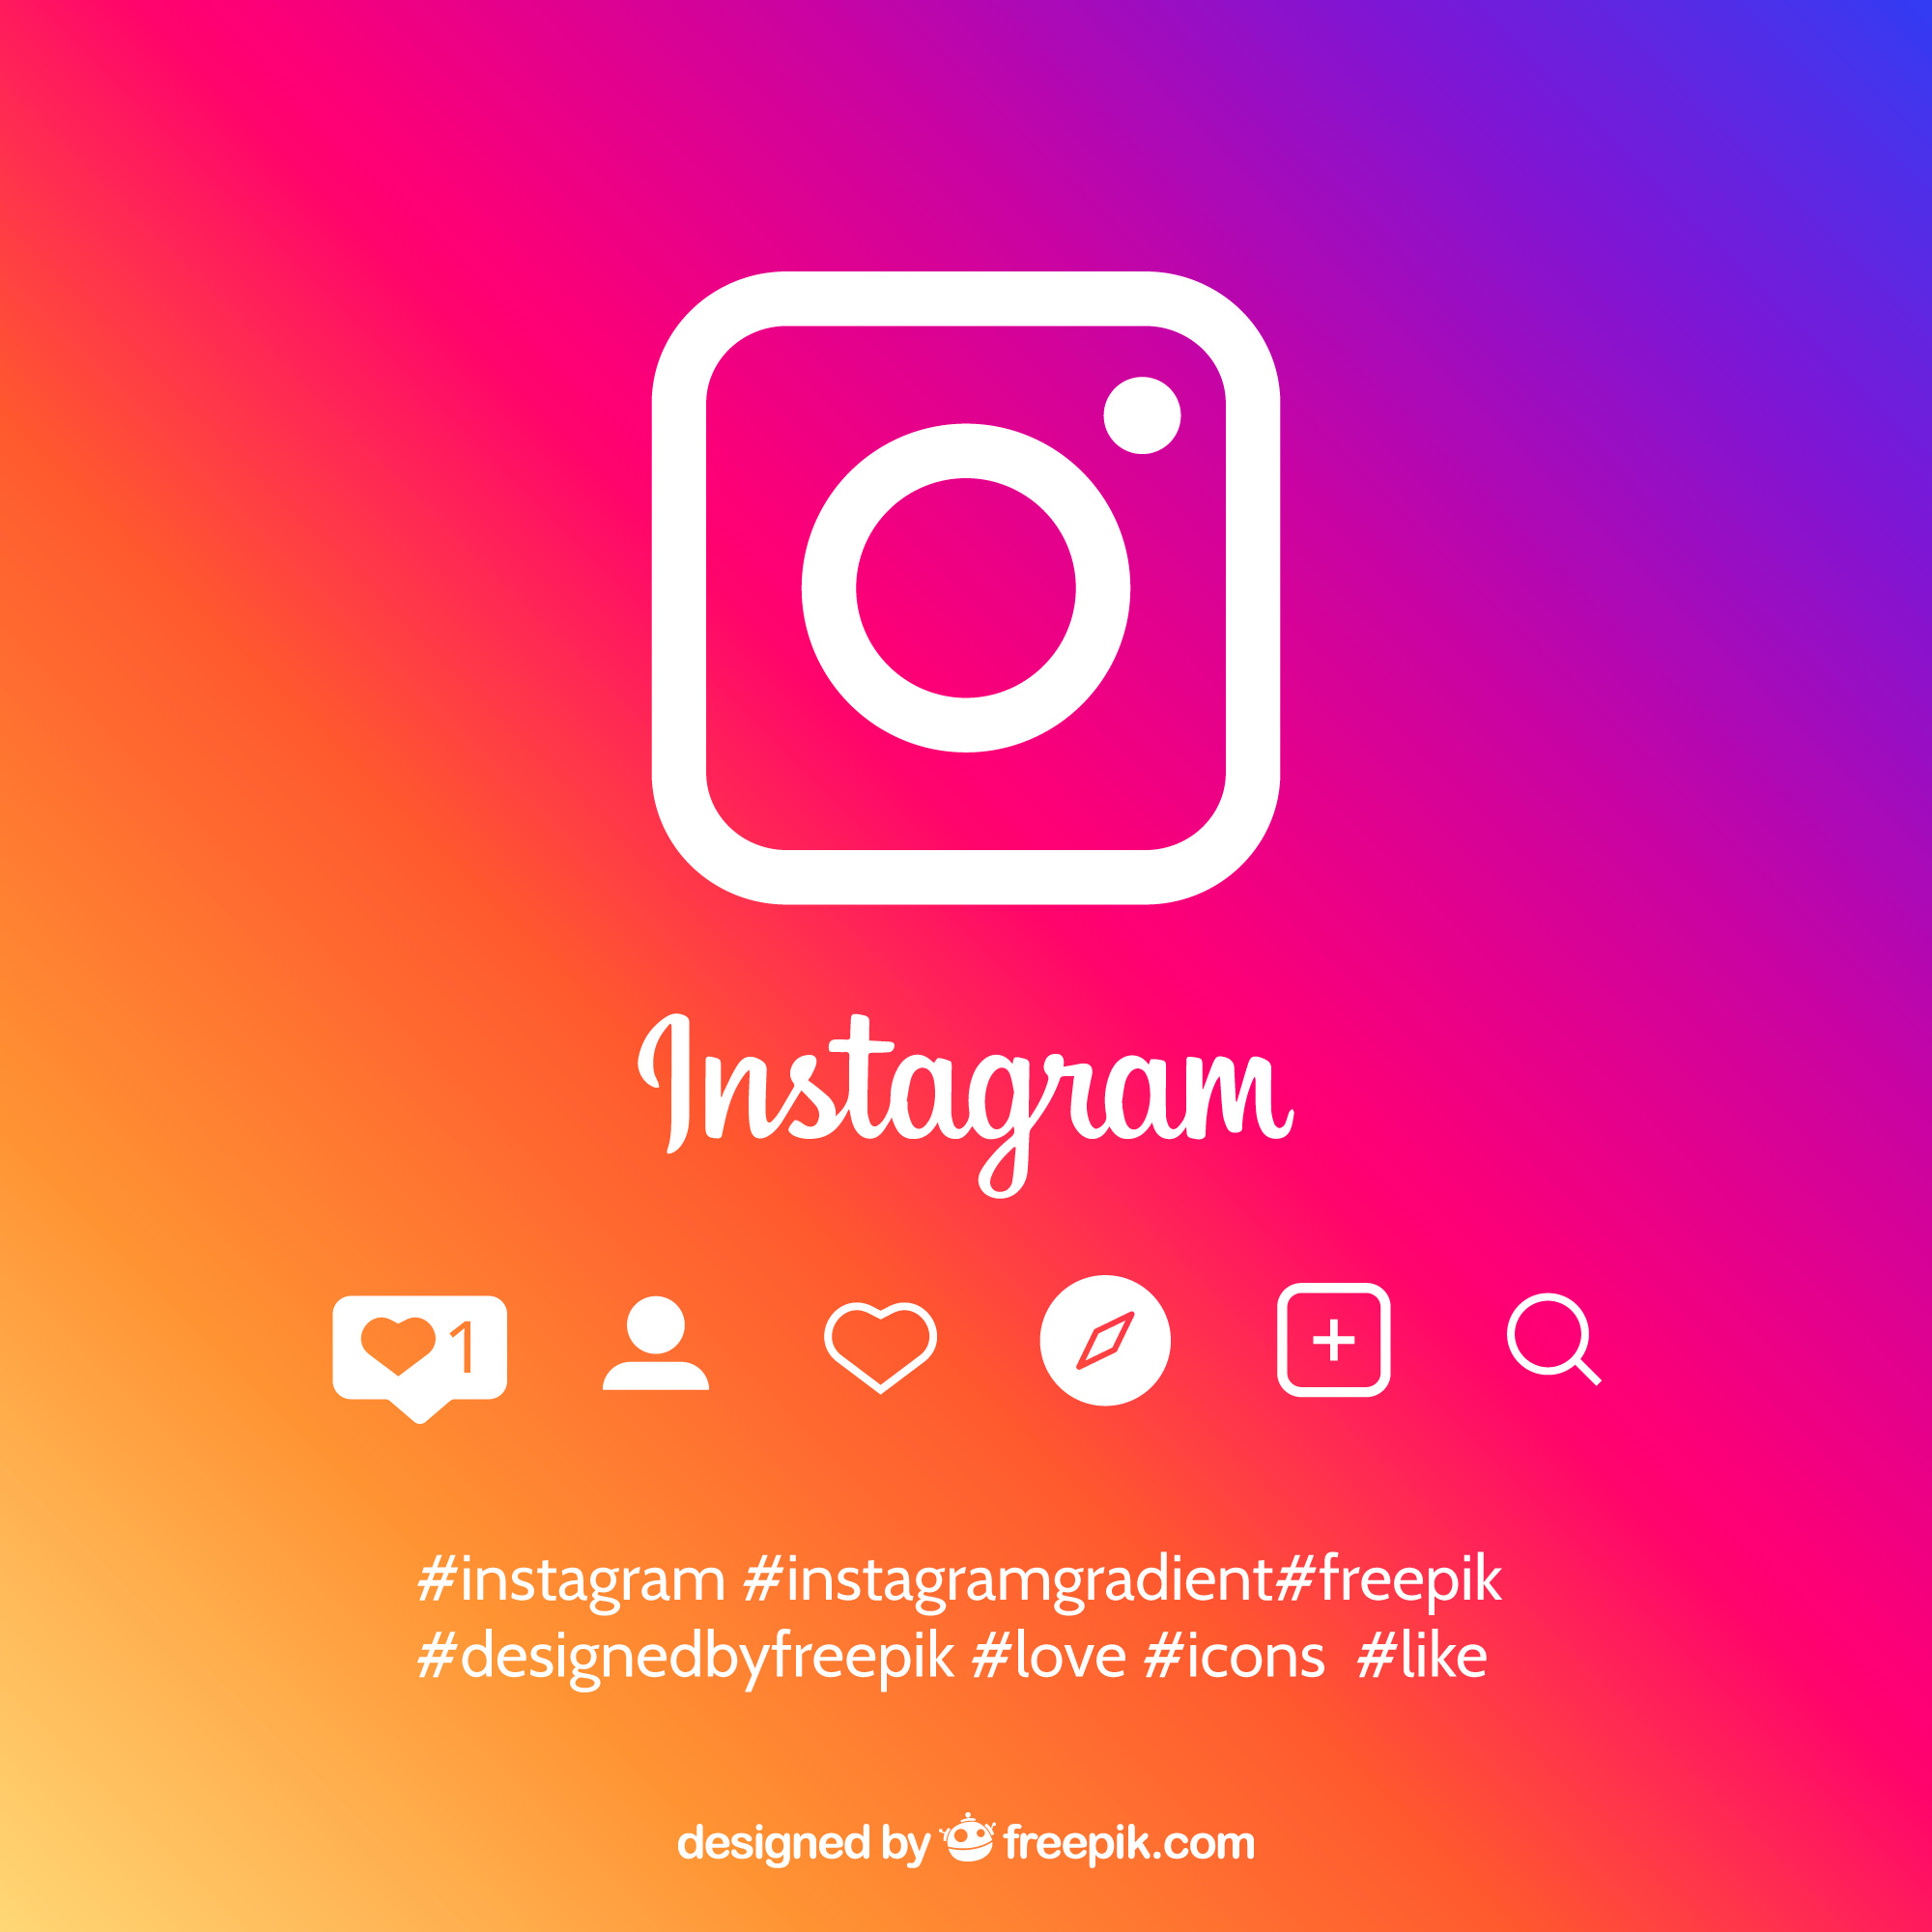 Instagram incentiva usuário a pensar antes de publicar comentários ofensivos